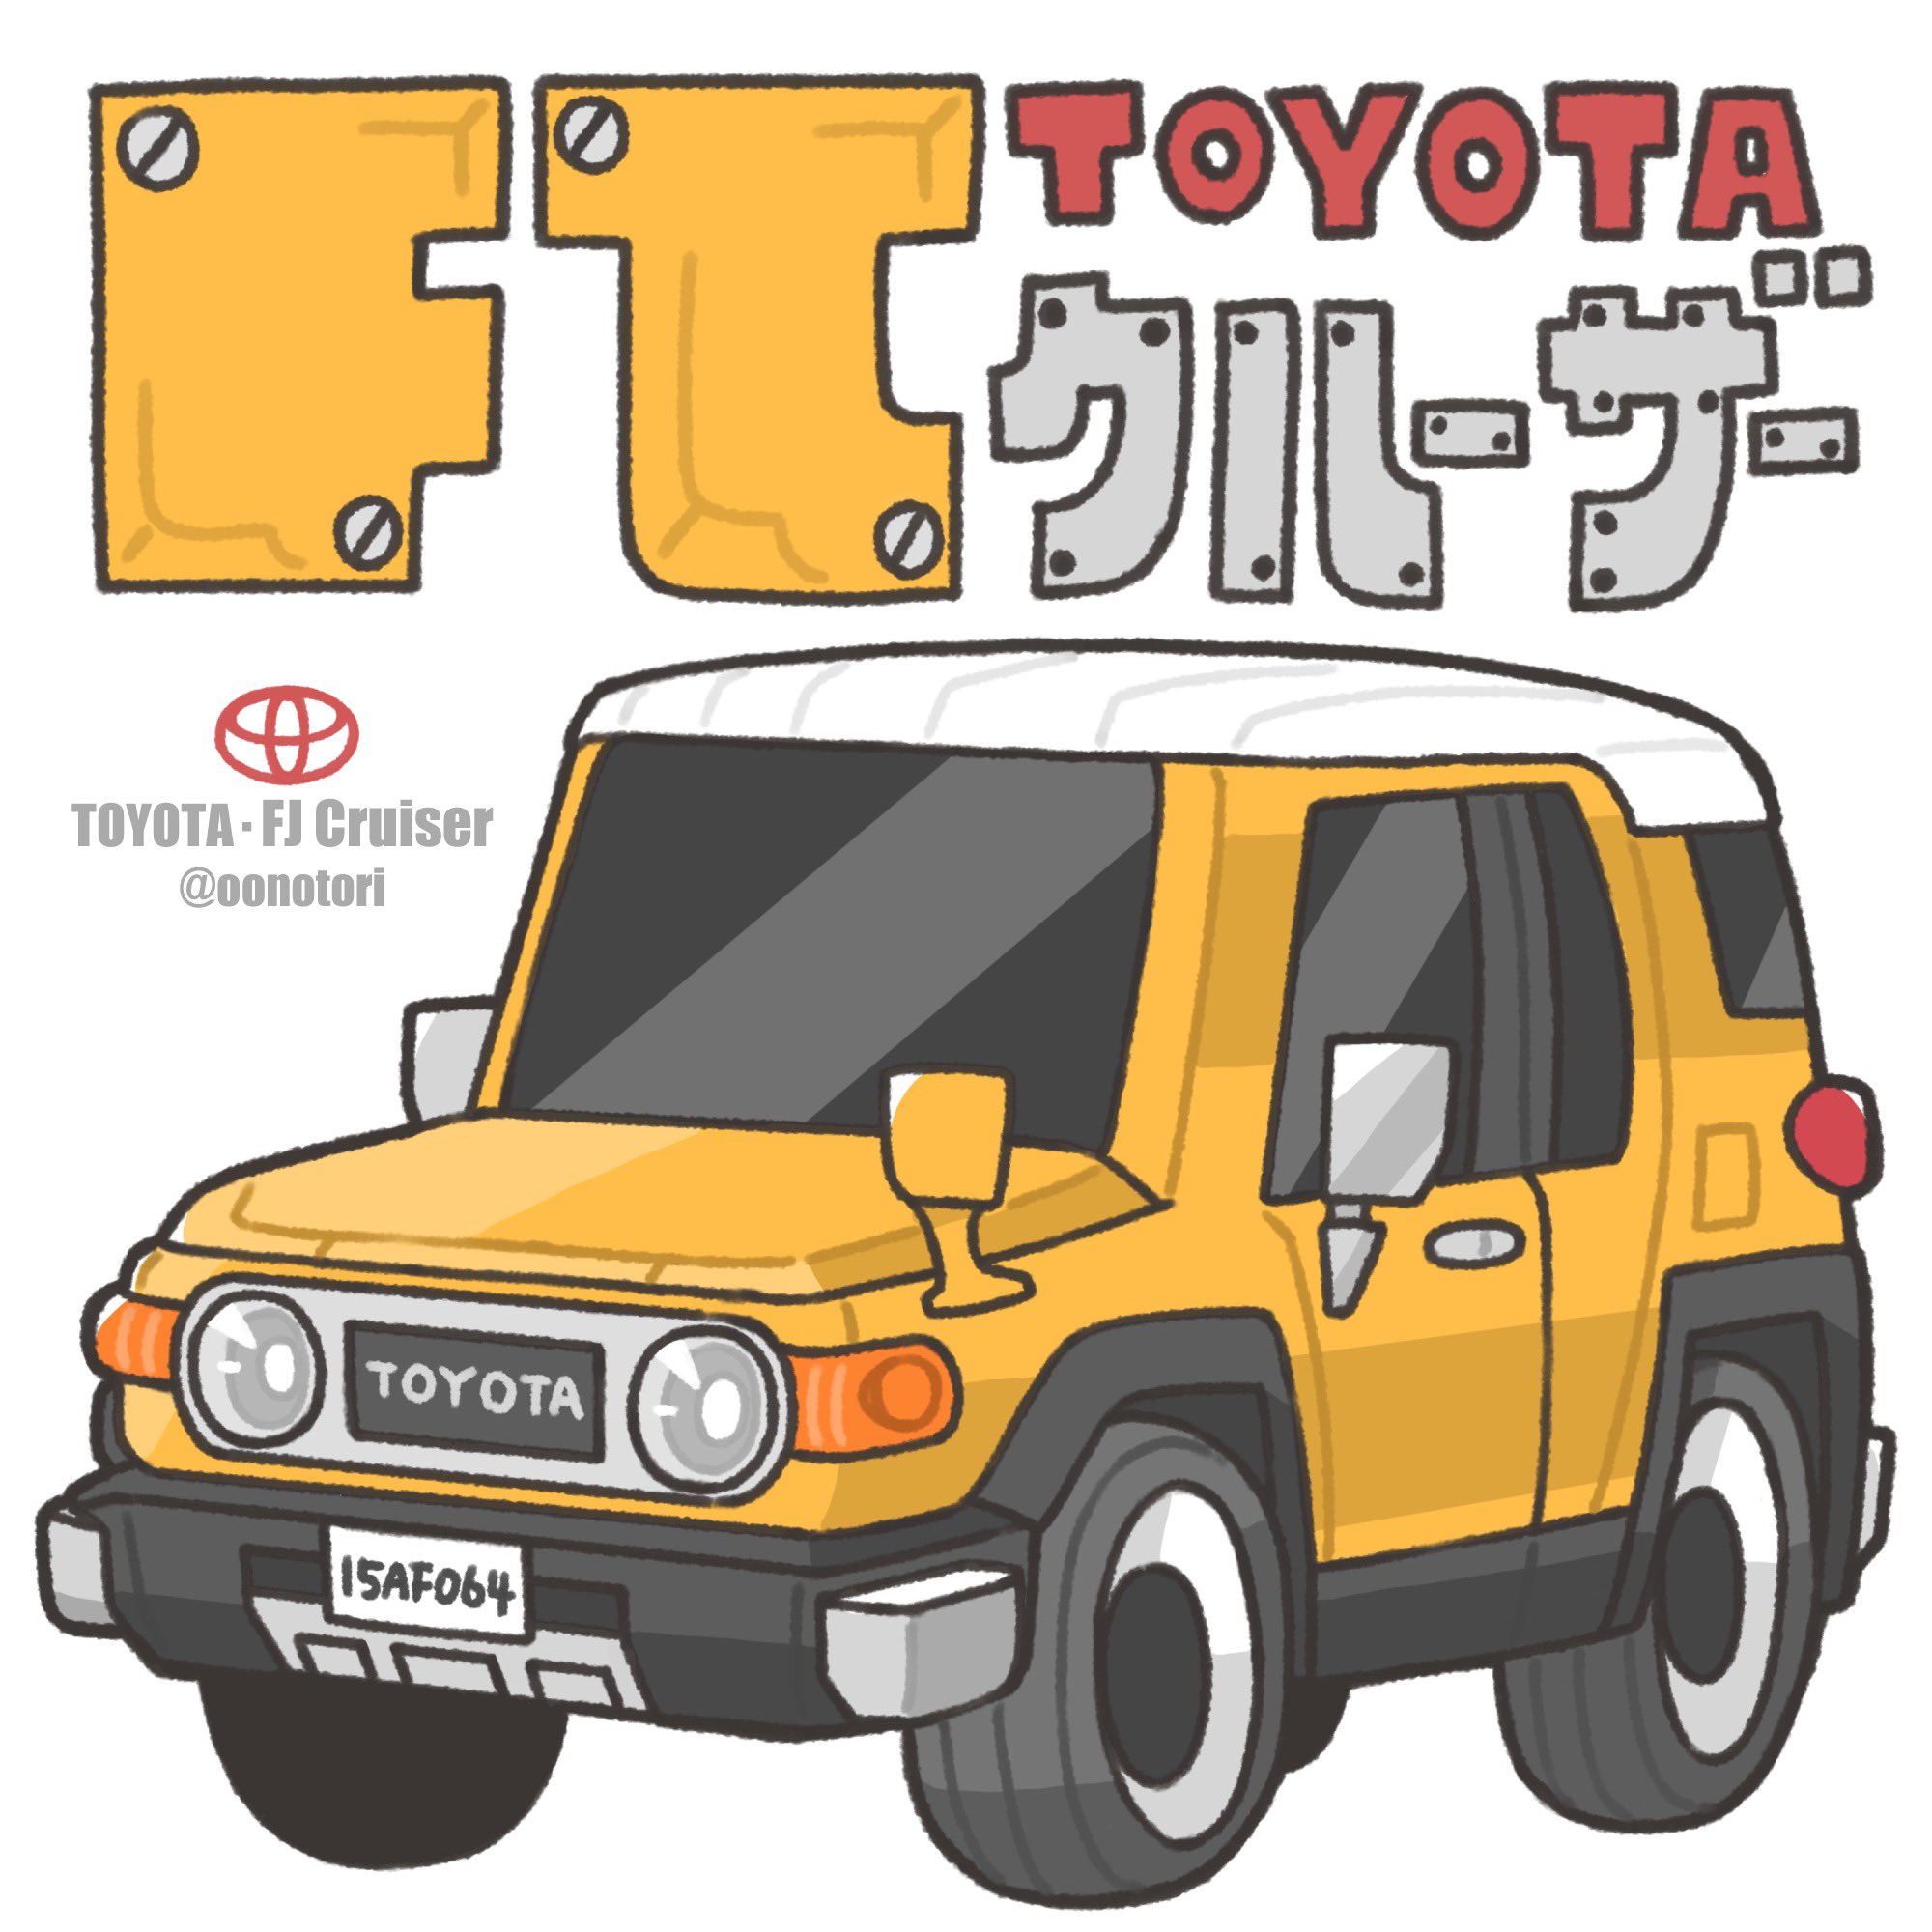 山本 鴻 将来乗りたい一台 車 トヨタ Fjクルーザー Suv イラスト デフォルメ イラスト好きな人と繋がりたい T Co 9xu9tw71ou Twitter